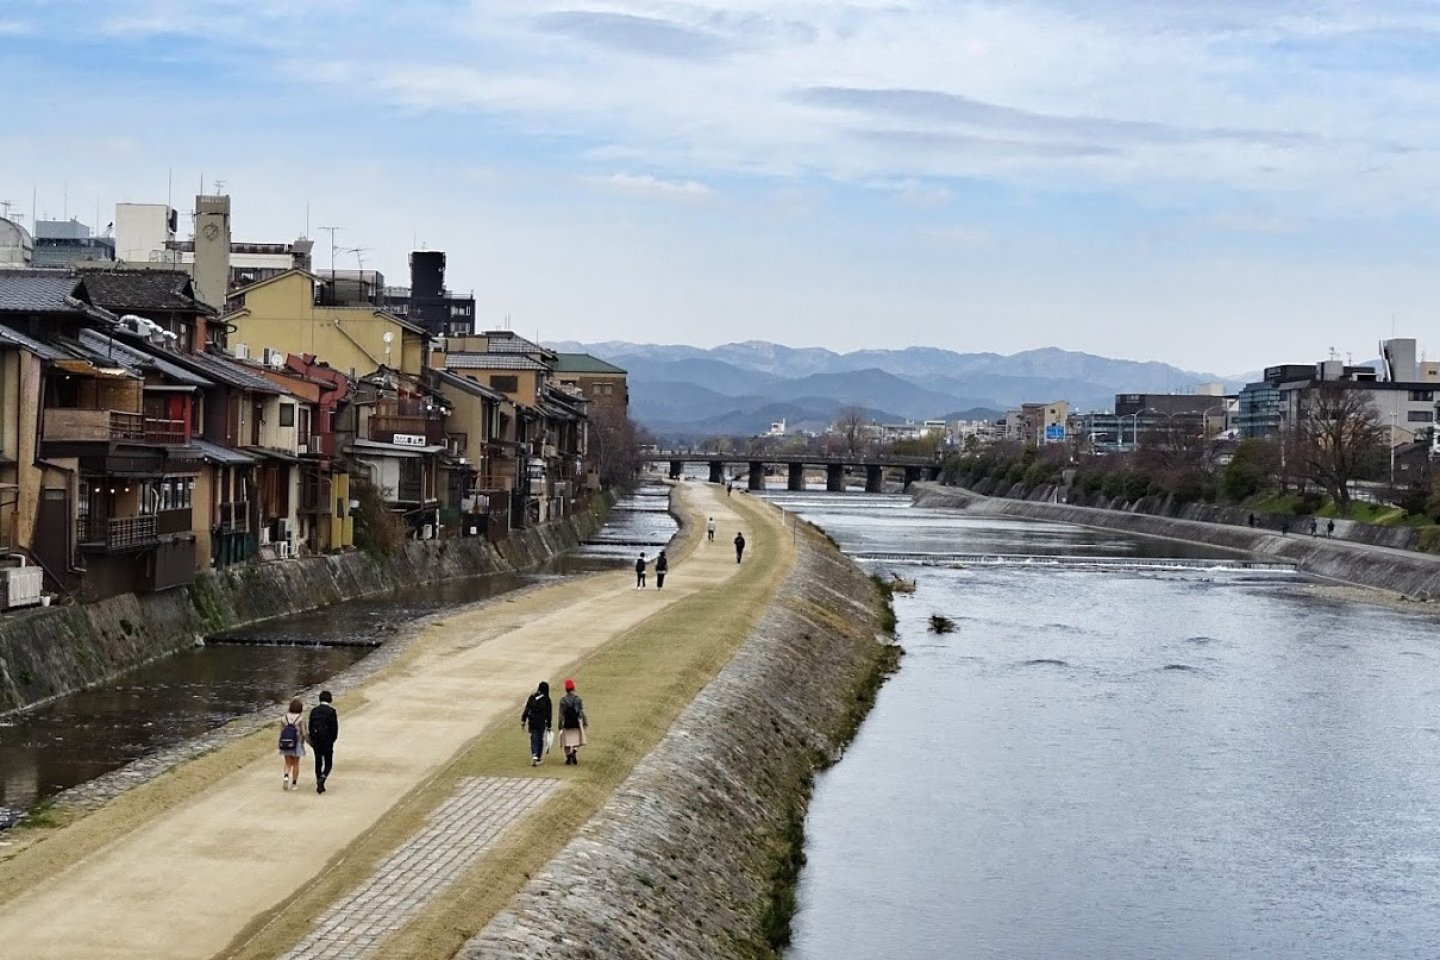 แม่น้ำคะโมะที่แสนงดงาม เป็นแม่น้ำสายสำคัญที่ไหลผ่านกลางเมืองเกียวโต